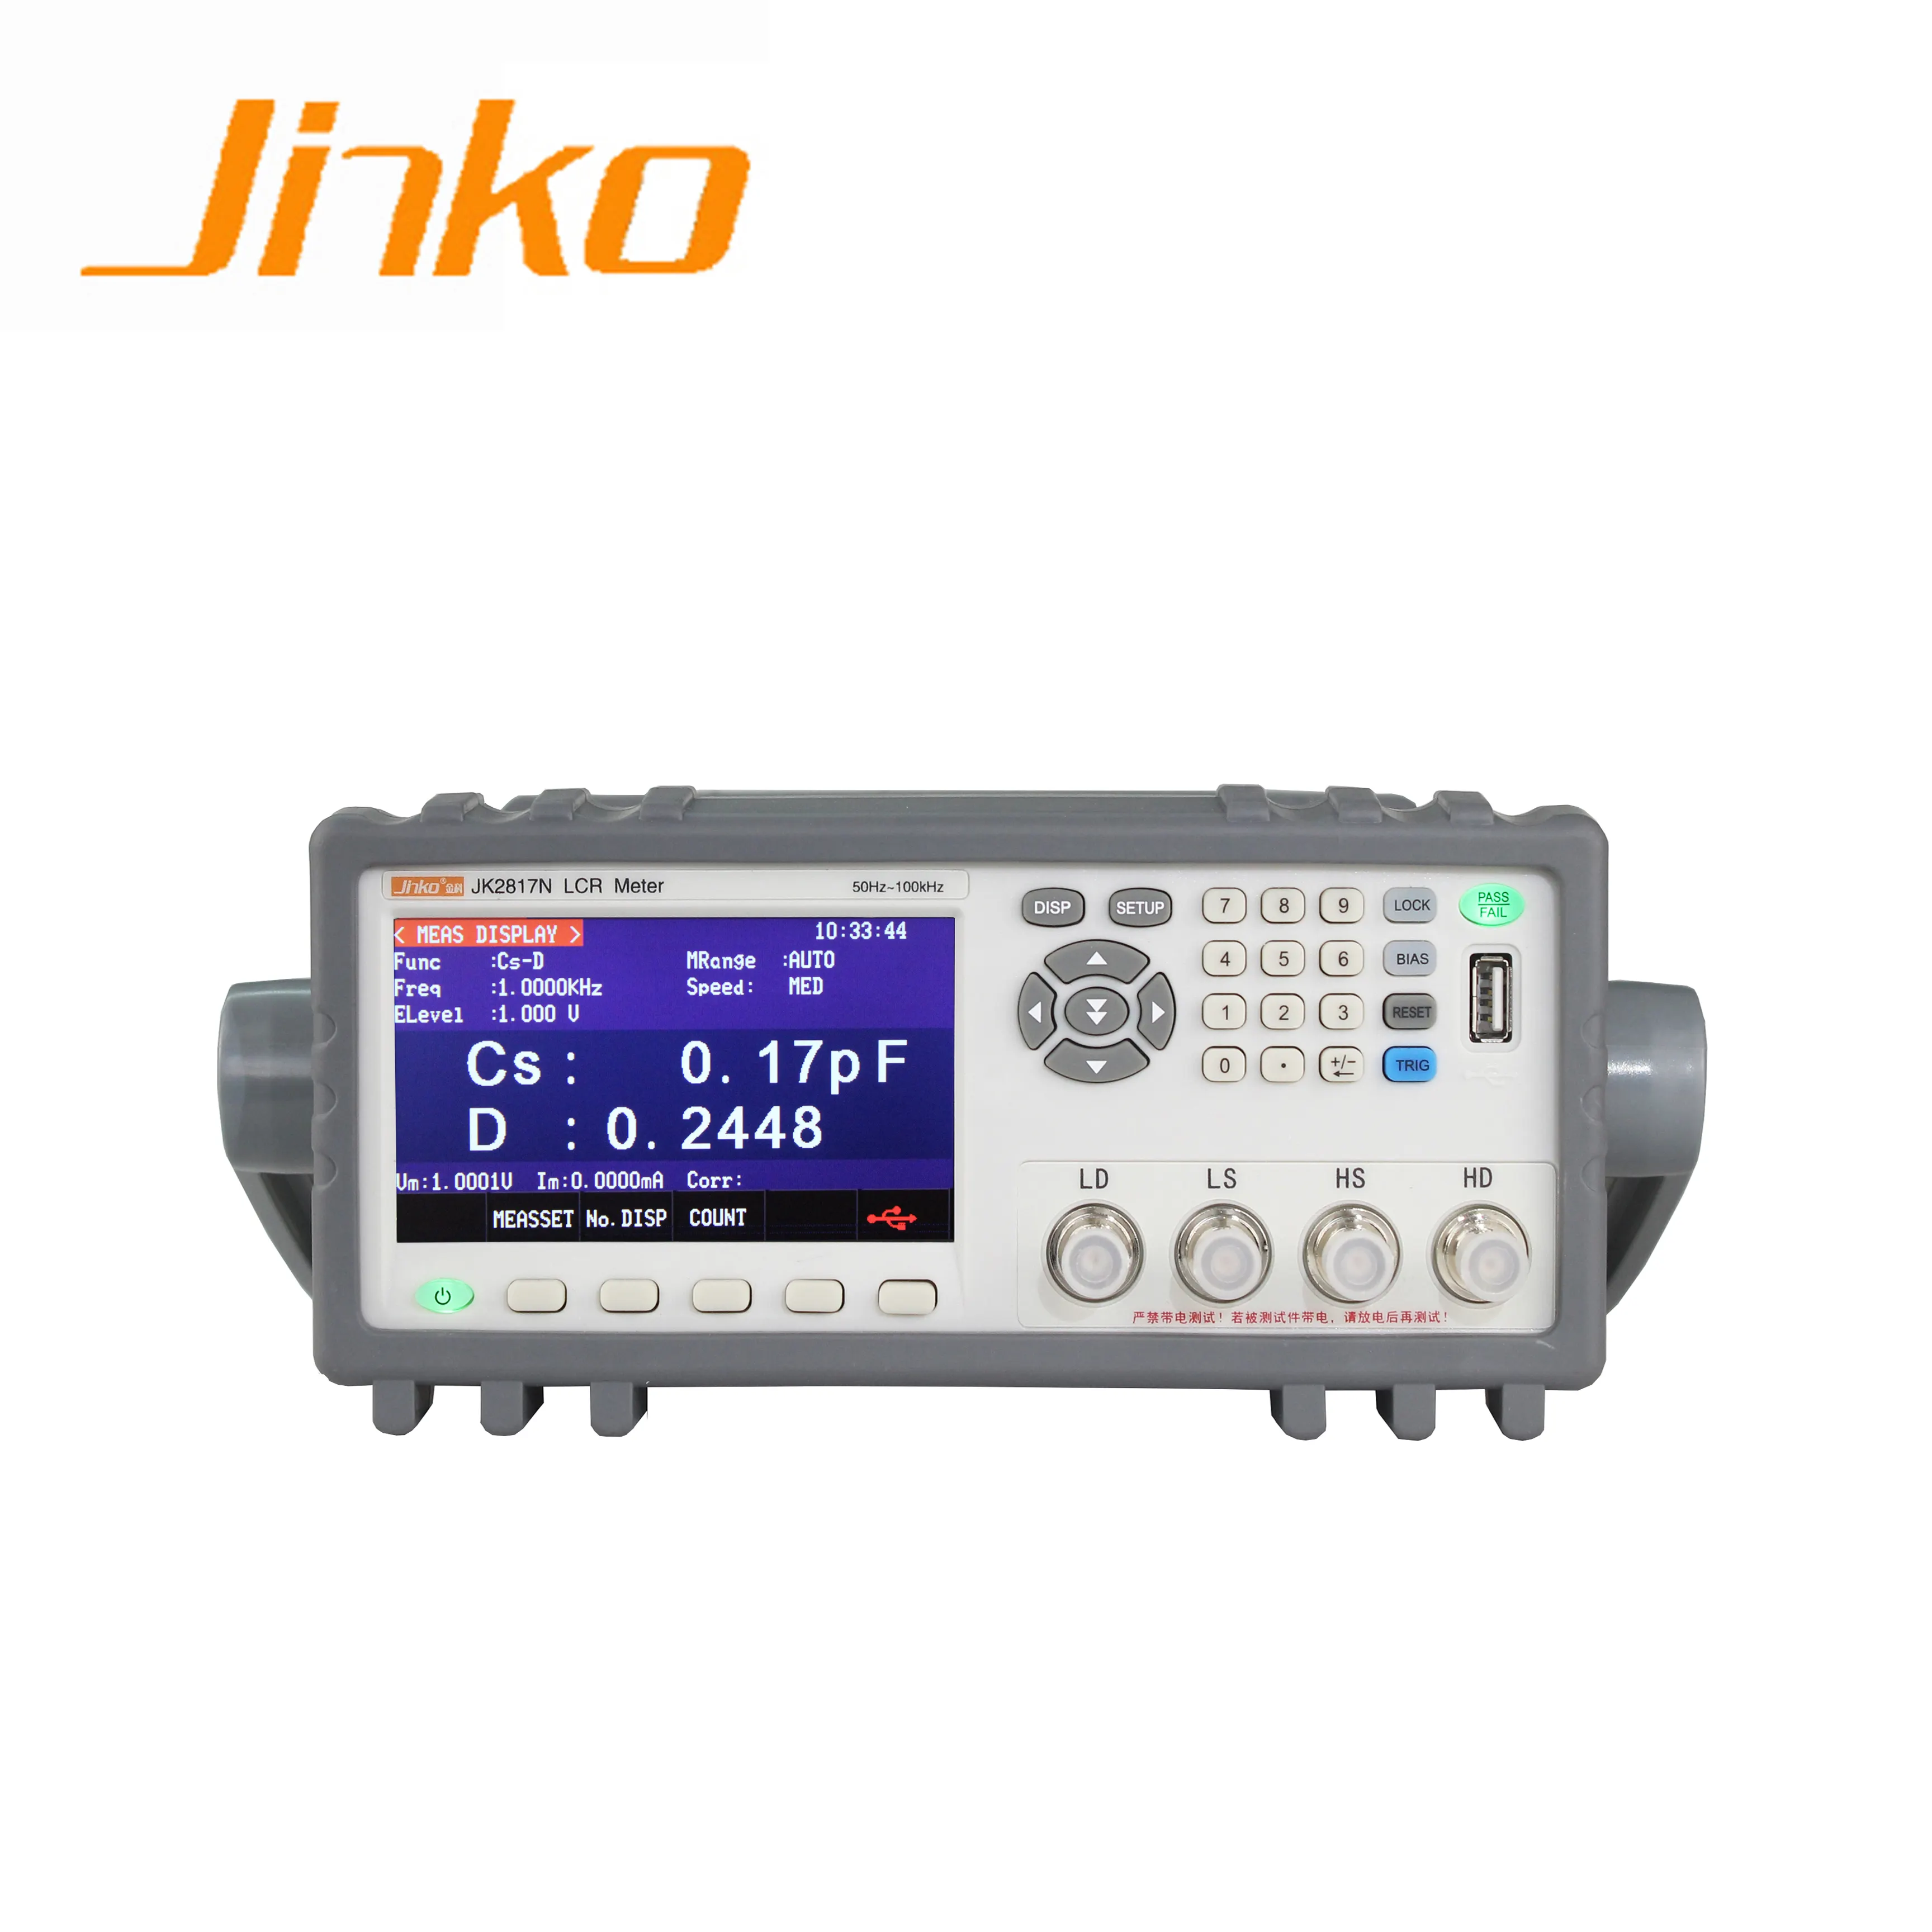 Nieuwe Precisie digit lcr meter 100 khz rlc meter JK2817N digitale LCR Meter met 0.1% test nauwkeurigheid